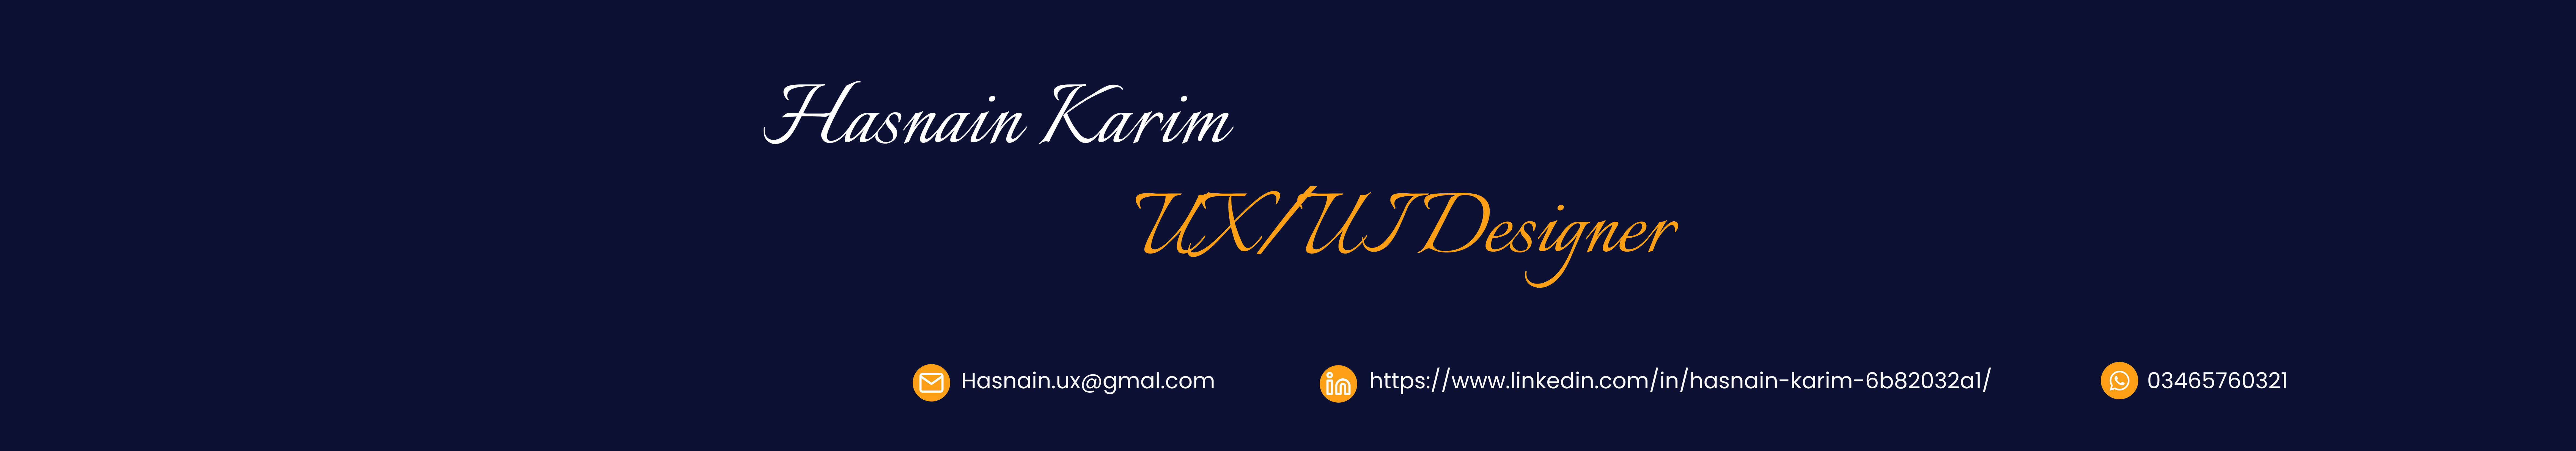 Hasnain Karim's profile banner